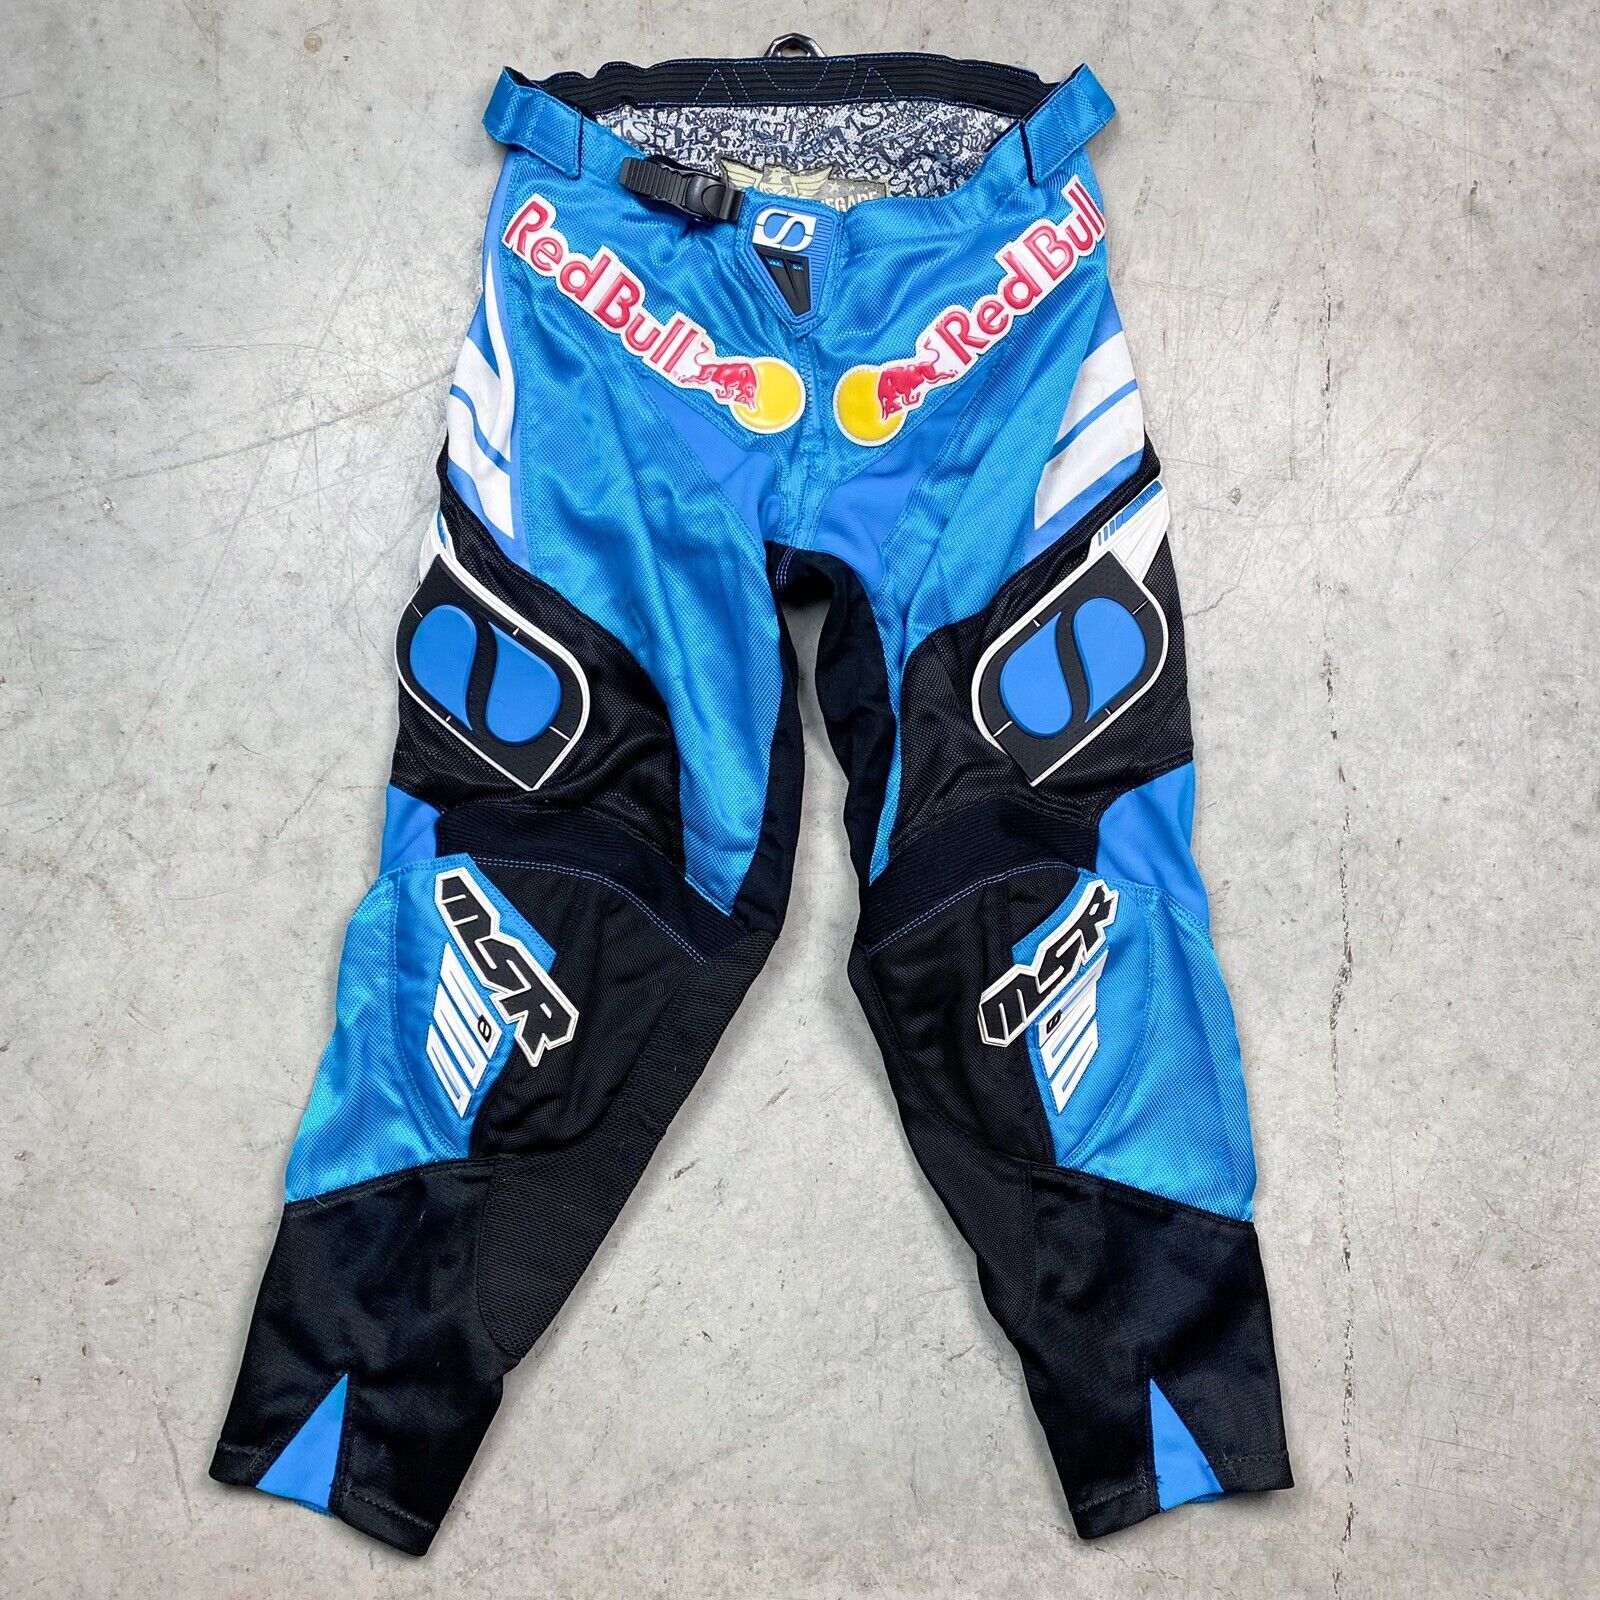 Nathan Ramsey's Race Worn 2005 MSR Team Red Bull KTM Motocross Pants ...